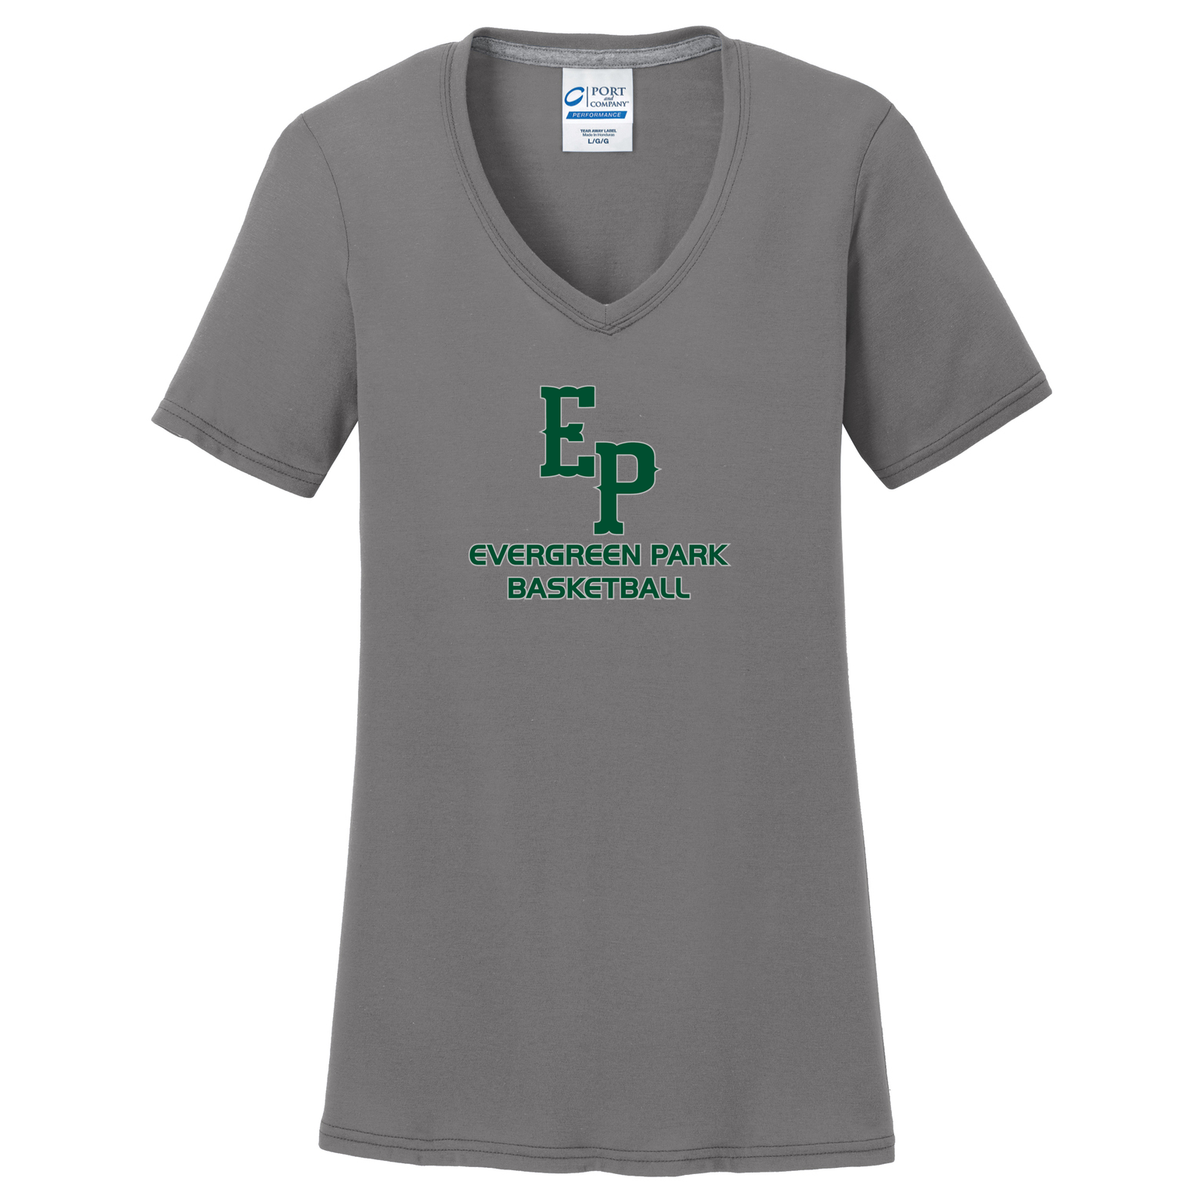 Evergreen Park Basketball Women's T-Shirt